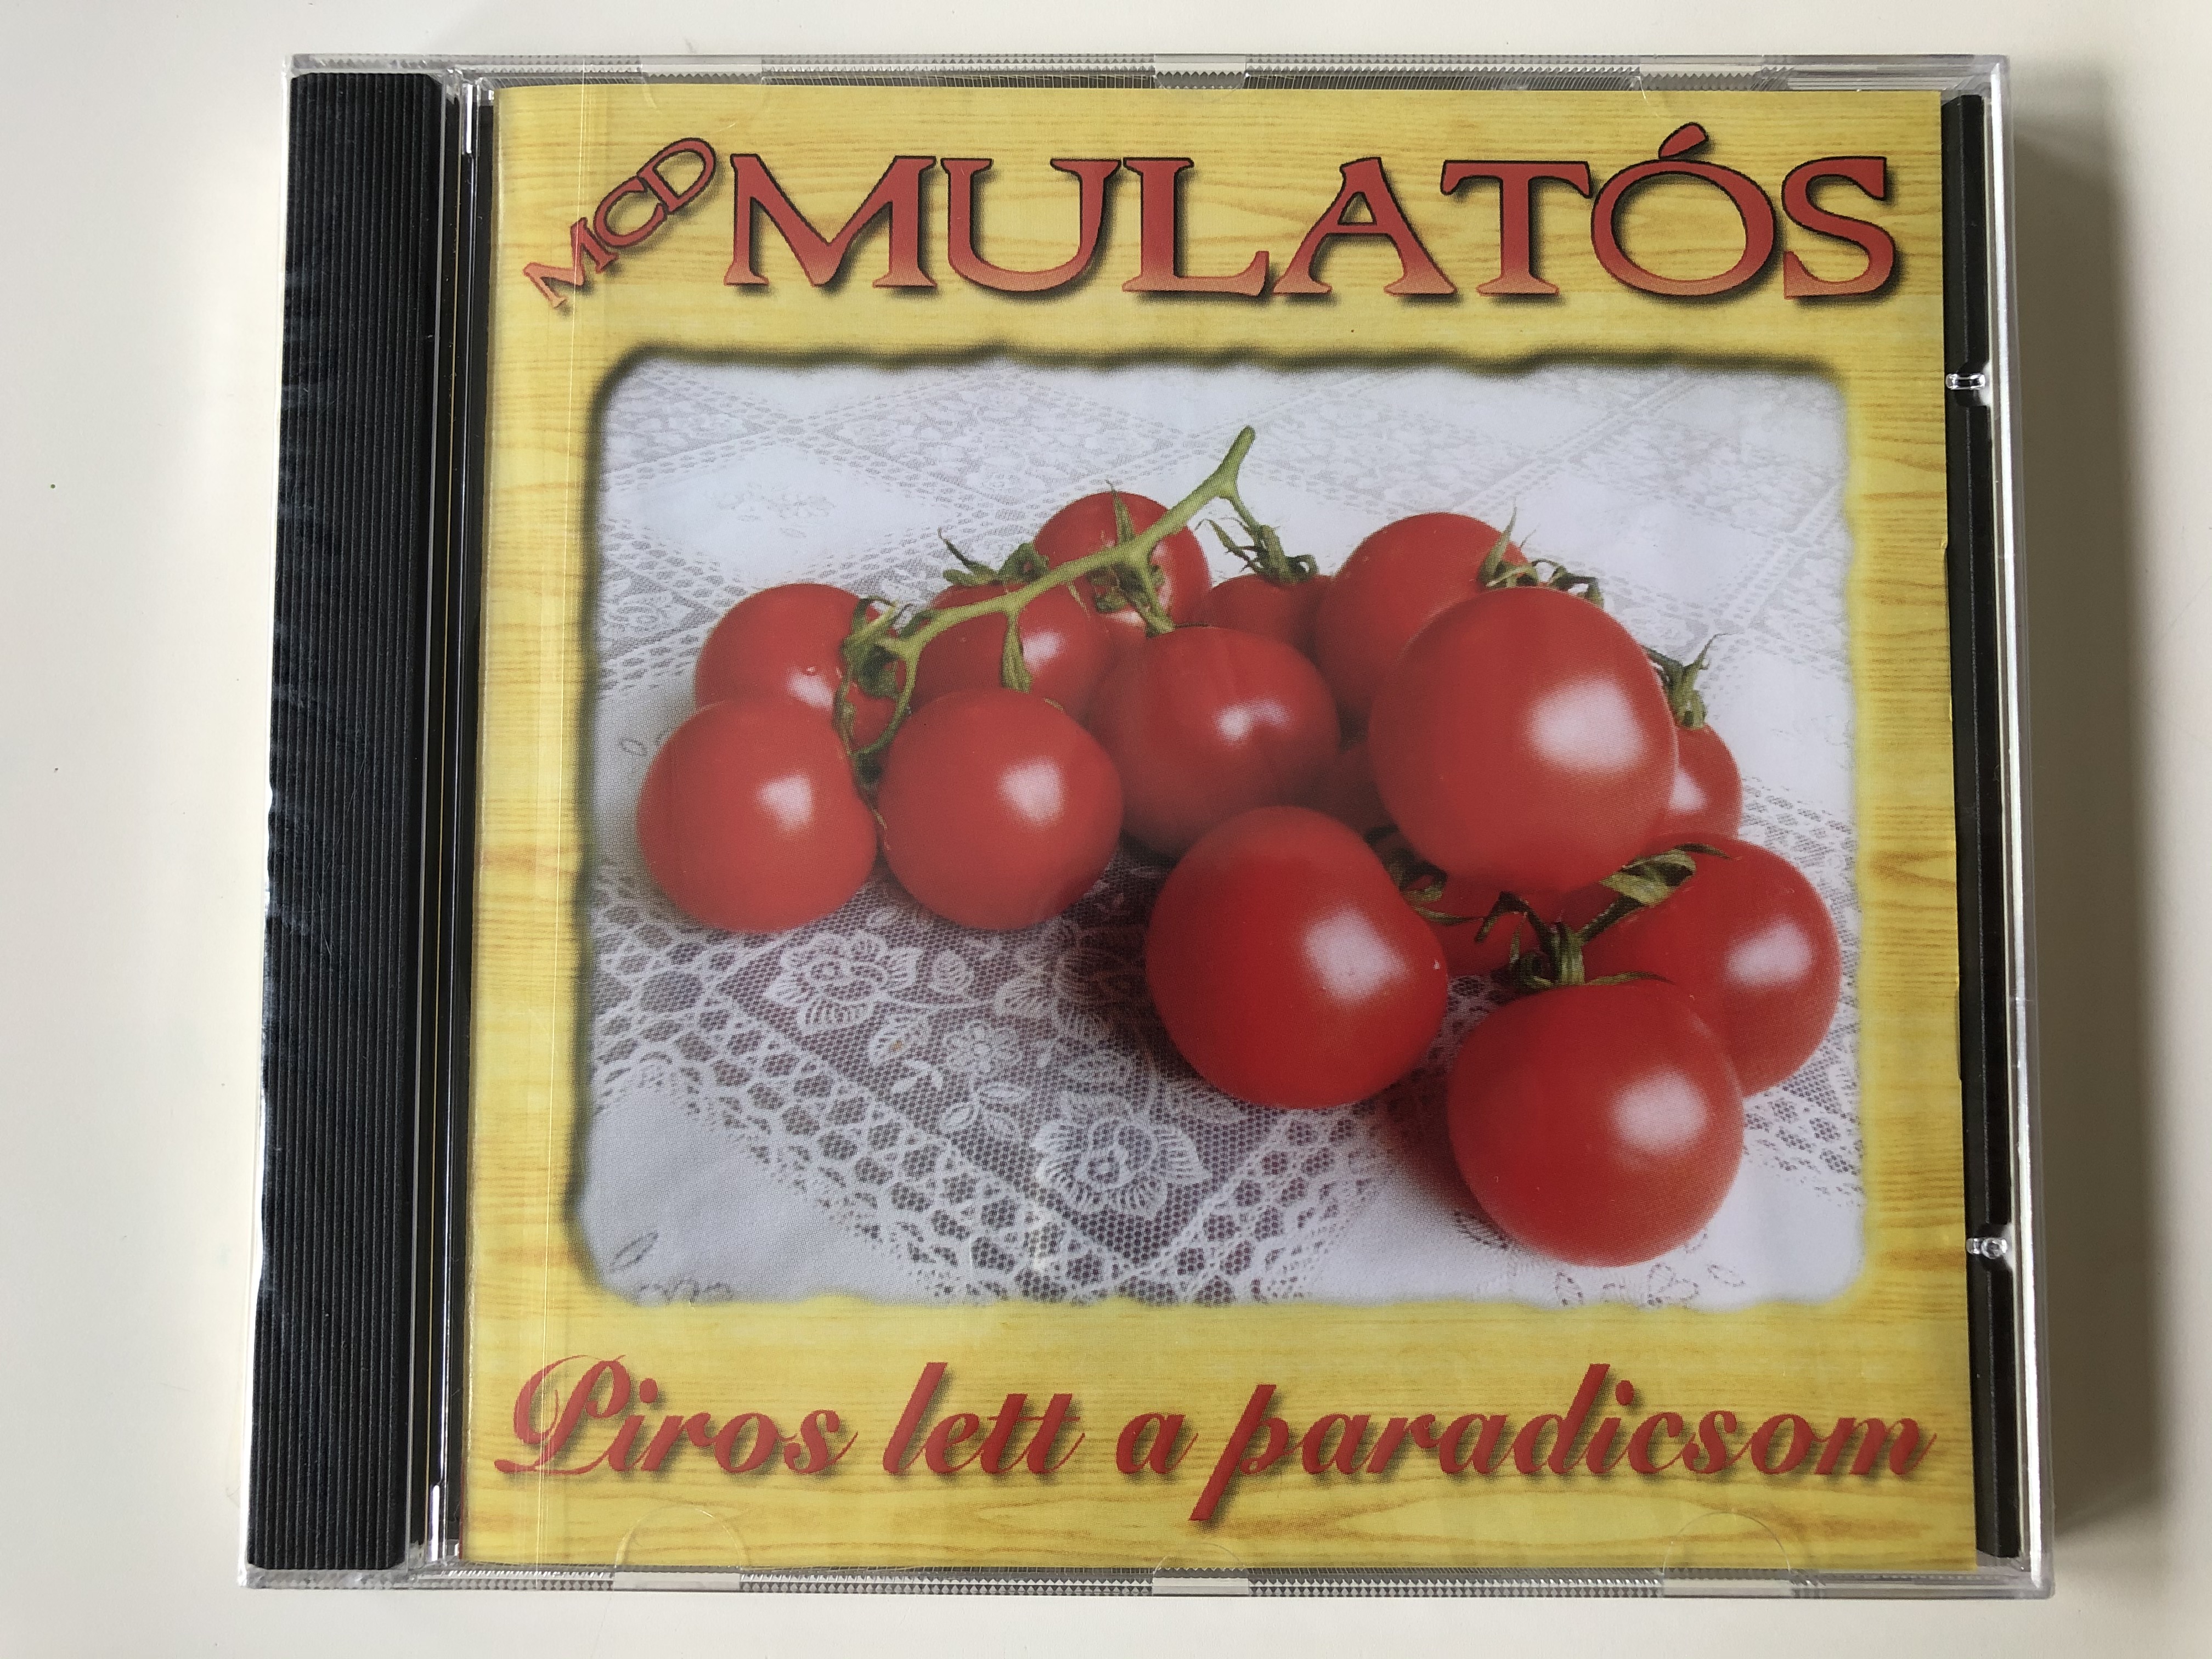 mcd-mulatos-piros-lett-a-paradicsom-musicdome-kft.-audio-cd-2005-5998175162089-1-.jpg